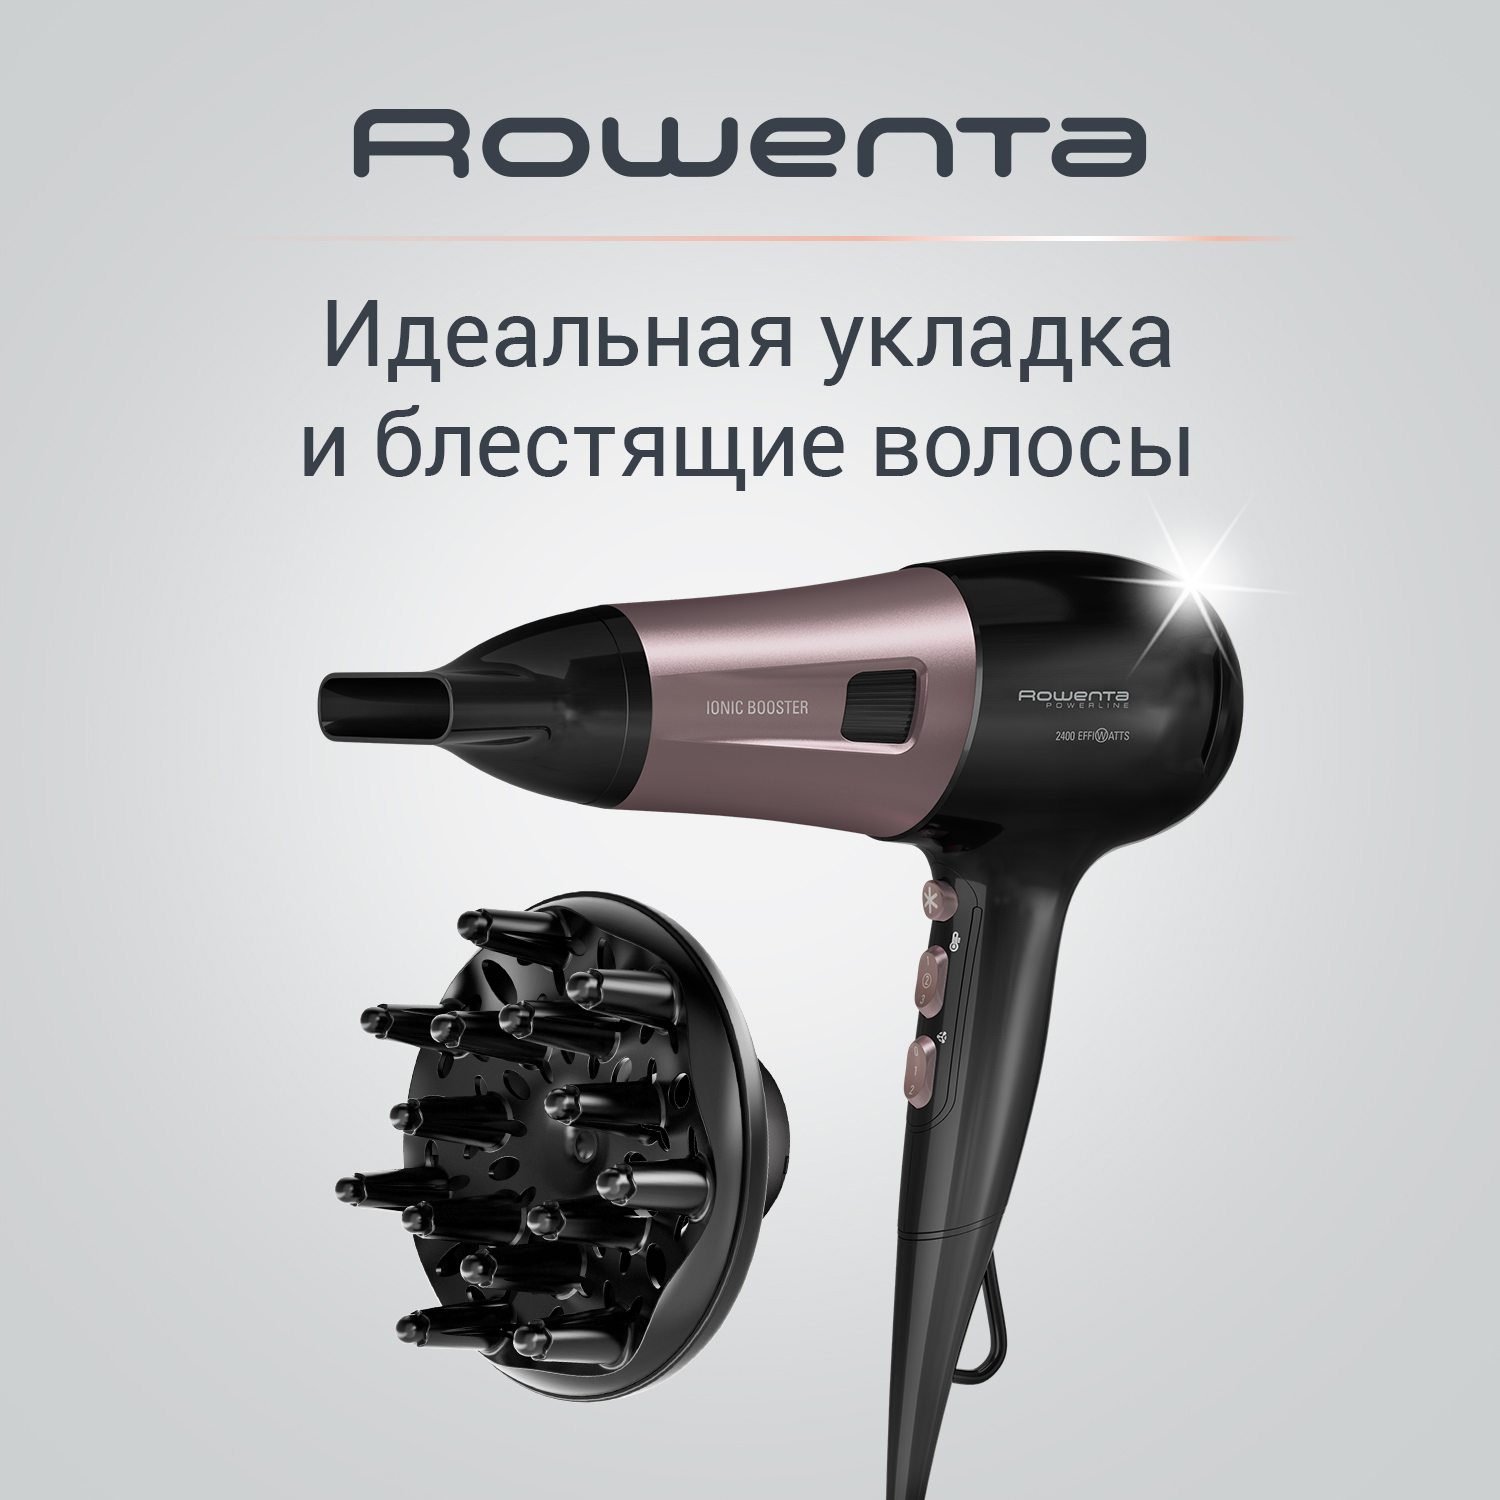 Фен Rowenta CV5940F0 2400 Вт черный, розовый фен rowenta cv3312f0 1 600 вт розовый